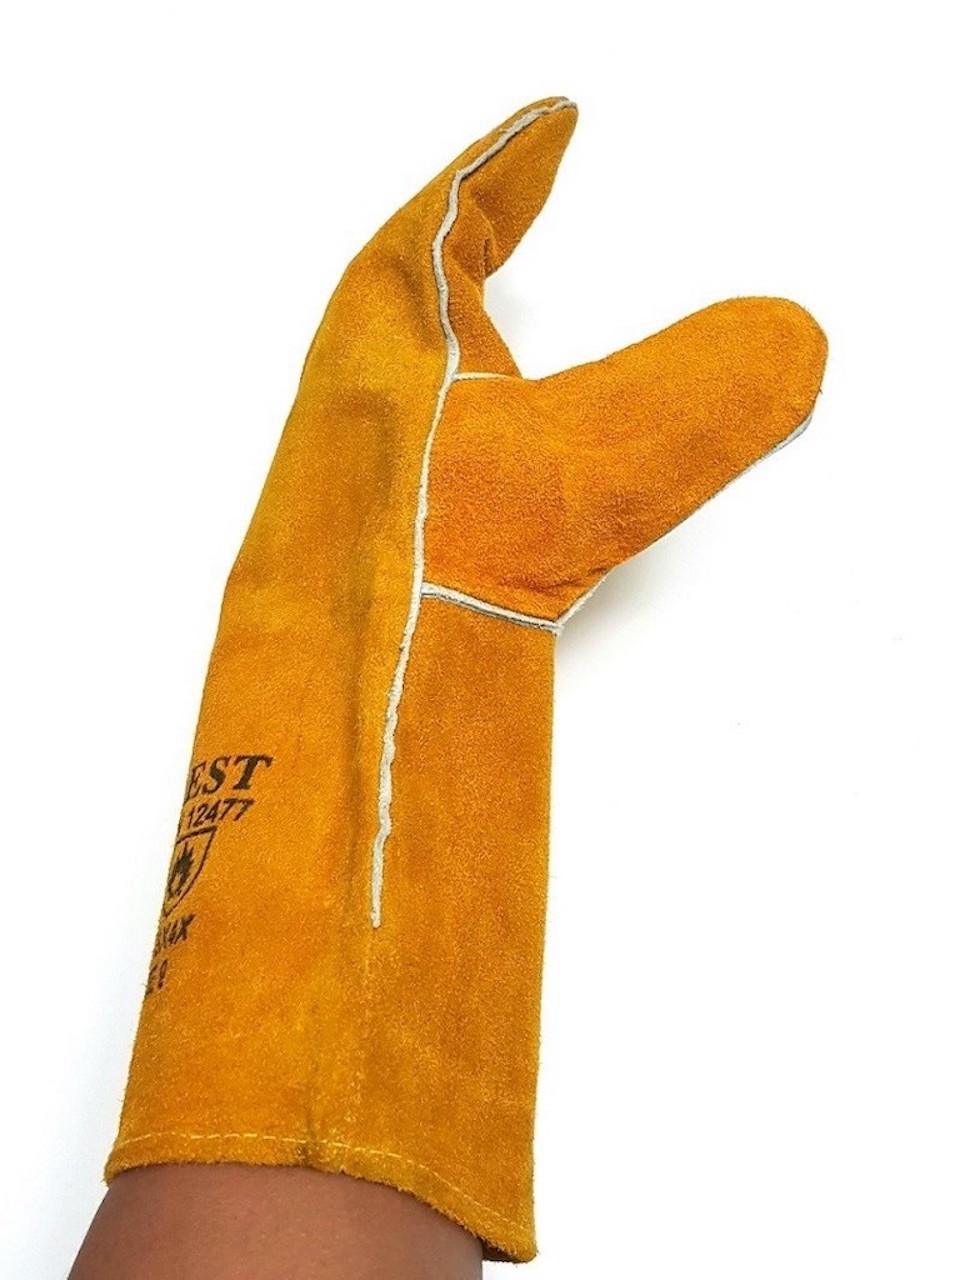 Găng tay da hàn Everest EW14 bao tay chống cháy, chịu nhiệt/ tia lửa văng bắn chuyên dùng hàn que (vàng) - Labor Leather Glove EW14